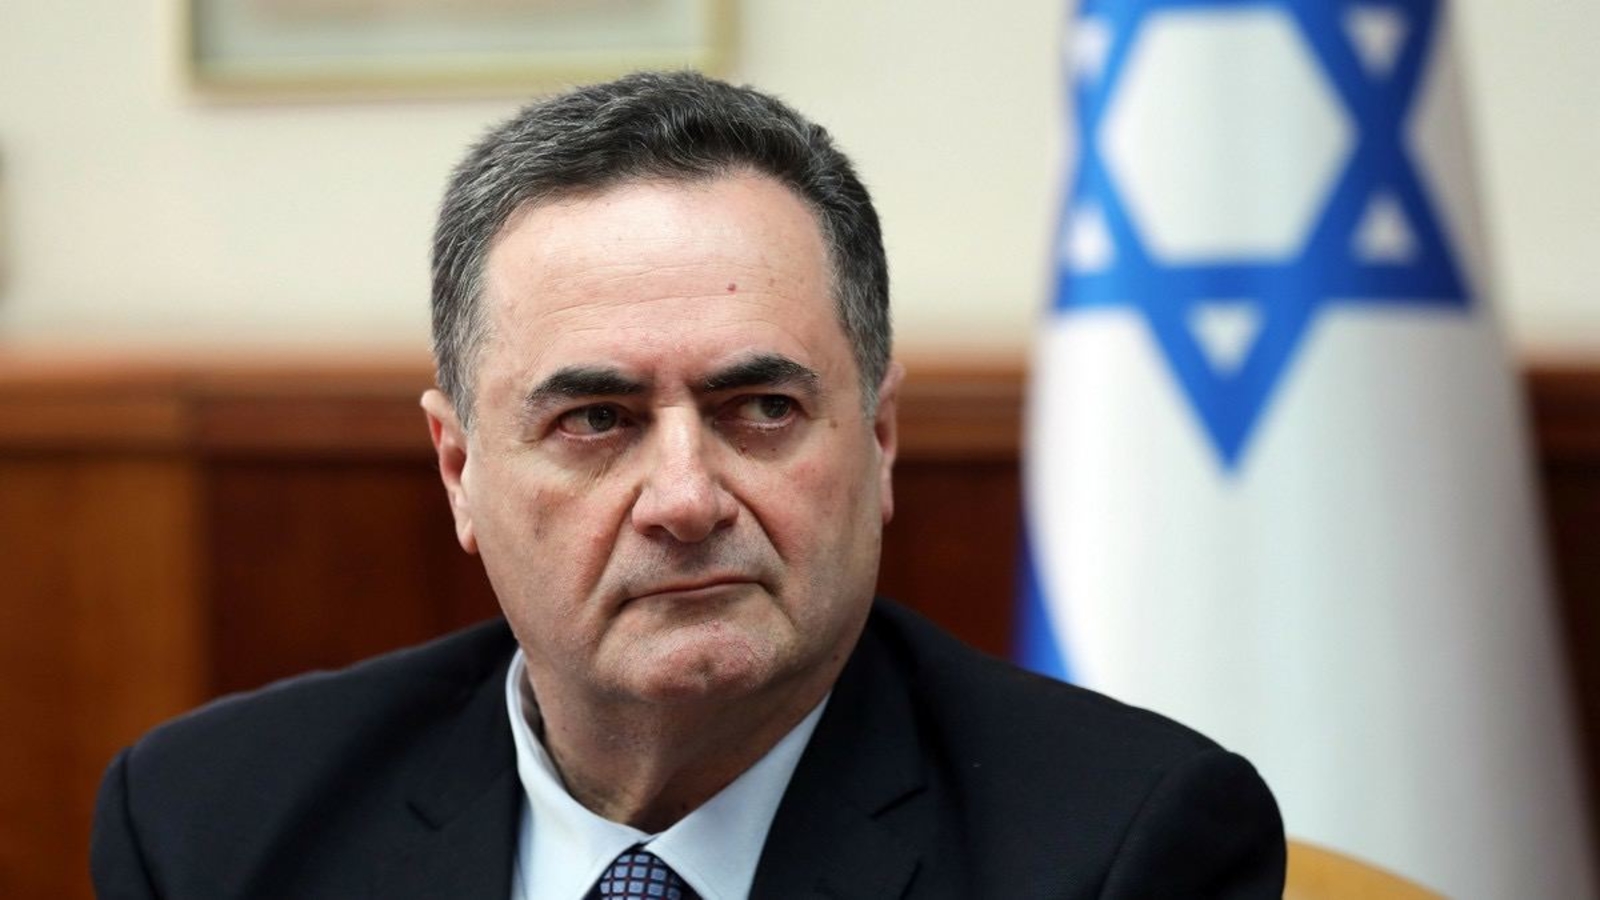 إسرائيل تعين يسرائيل كاتس وزيراً جديداً للخارجية